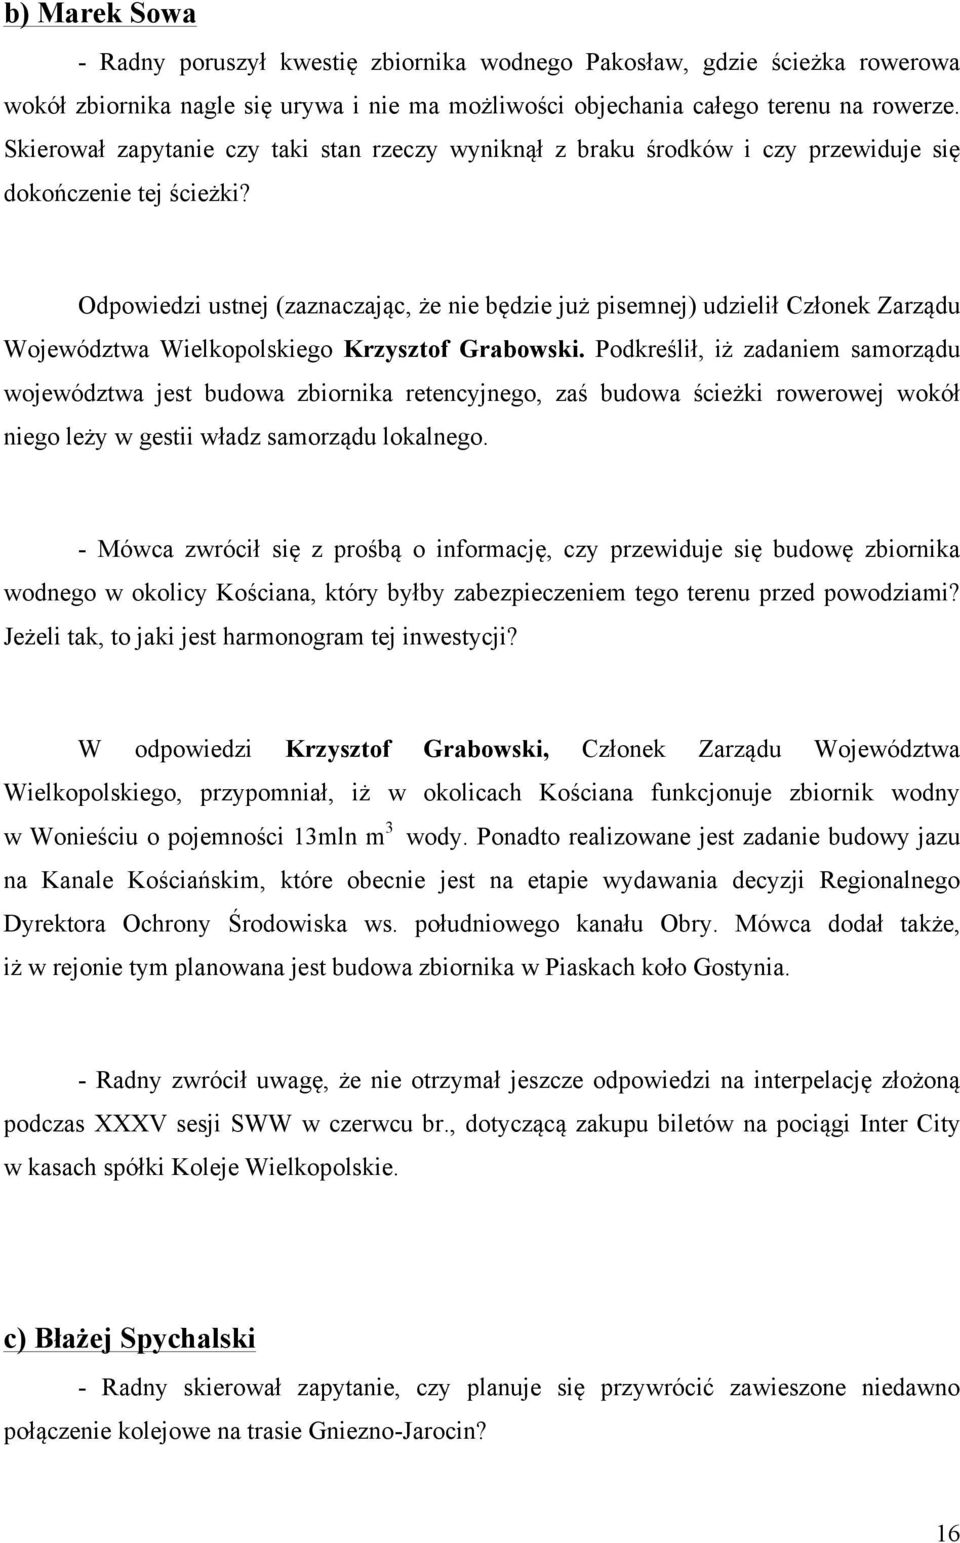 Odpowiedzi ustnej (zaznaczając, że nie będzie już pisemnej) udzielił Członek Zarządu Województwa Wielkopolskiego Krzysztof Grabowski.